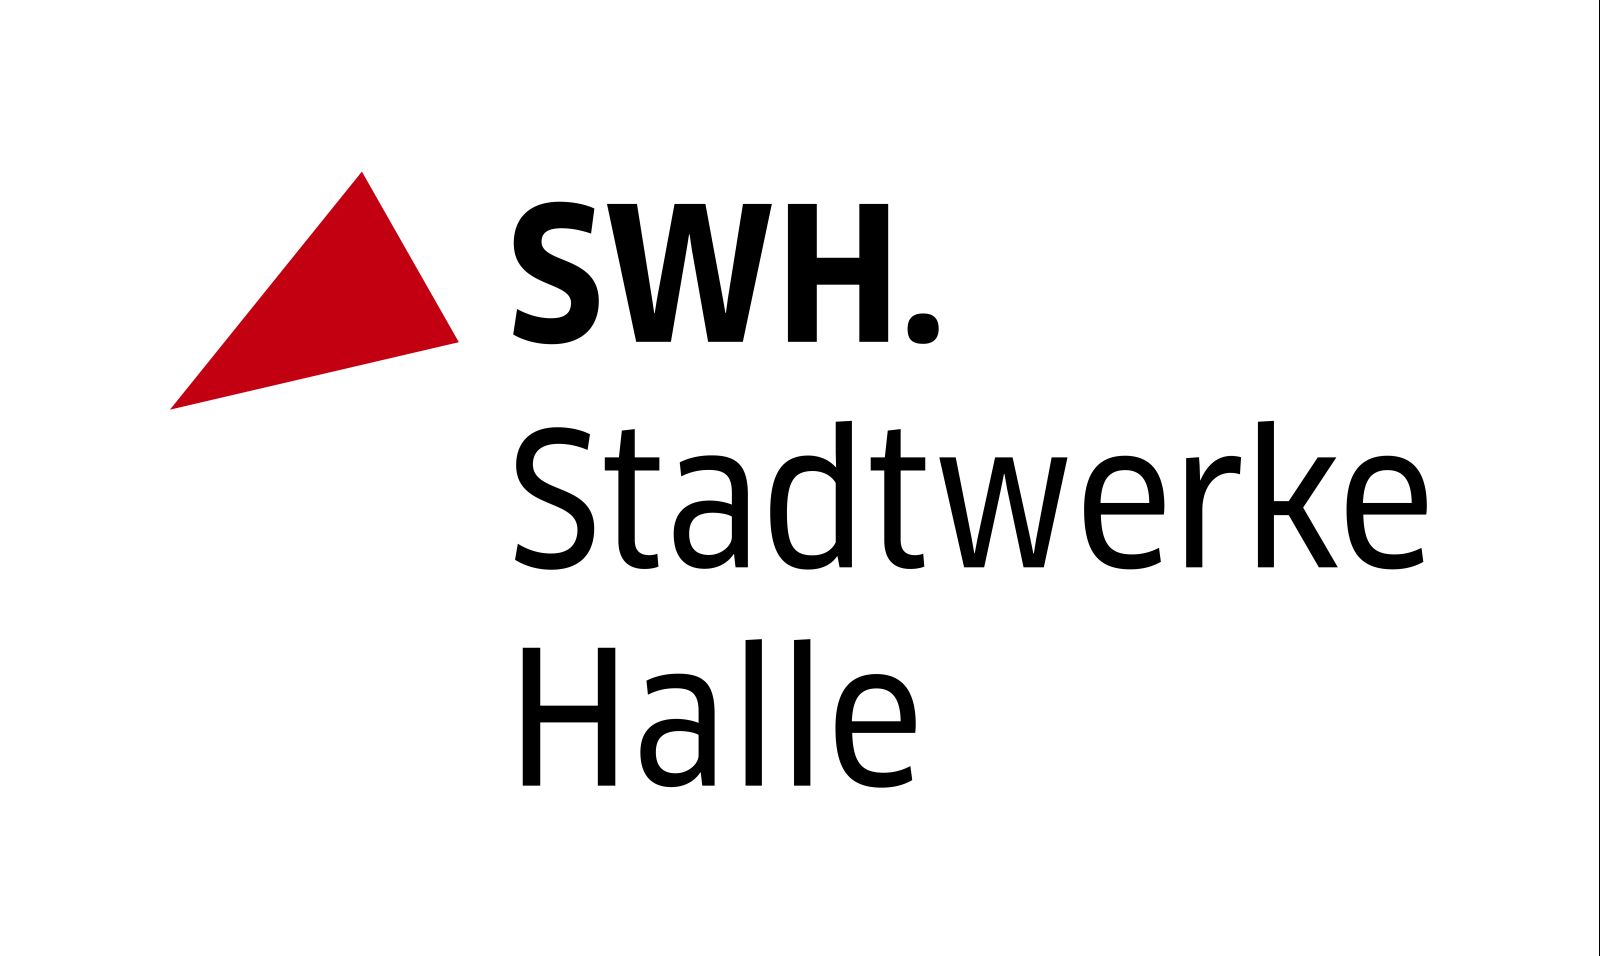 SWH. Stadtwerke Halle - Saalebulls Trikotsponsor